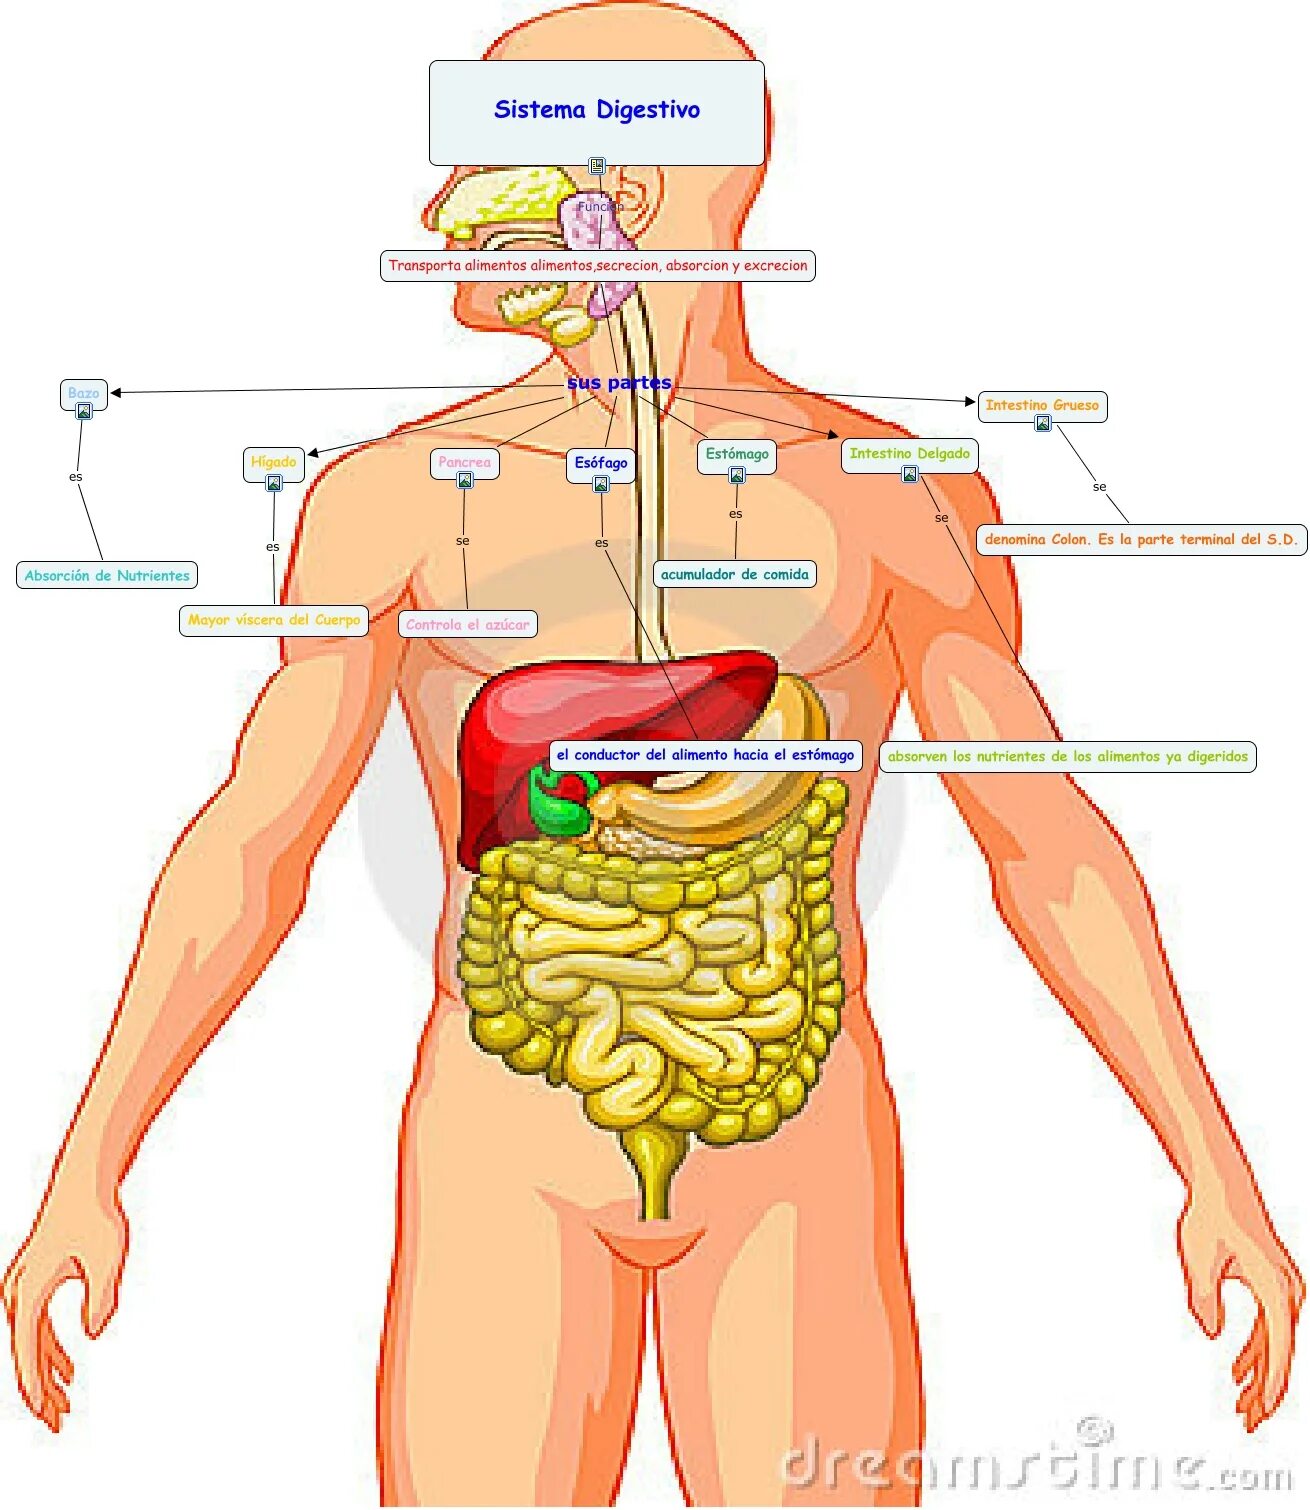 Органы человека с ребрами. Атлас ЖКТ человека. ЖКТ человека строение с ребрами. Атлас системы пищеварения человека-. Анатомия ЖКТ человека в картинках.